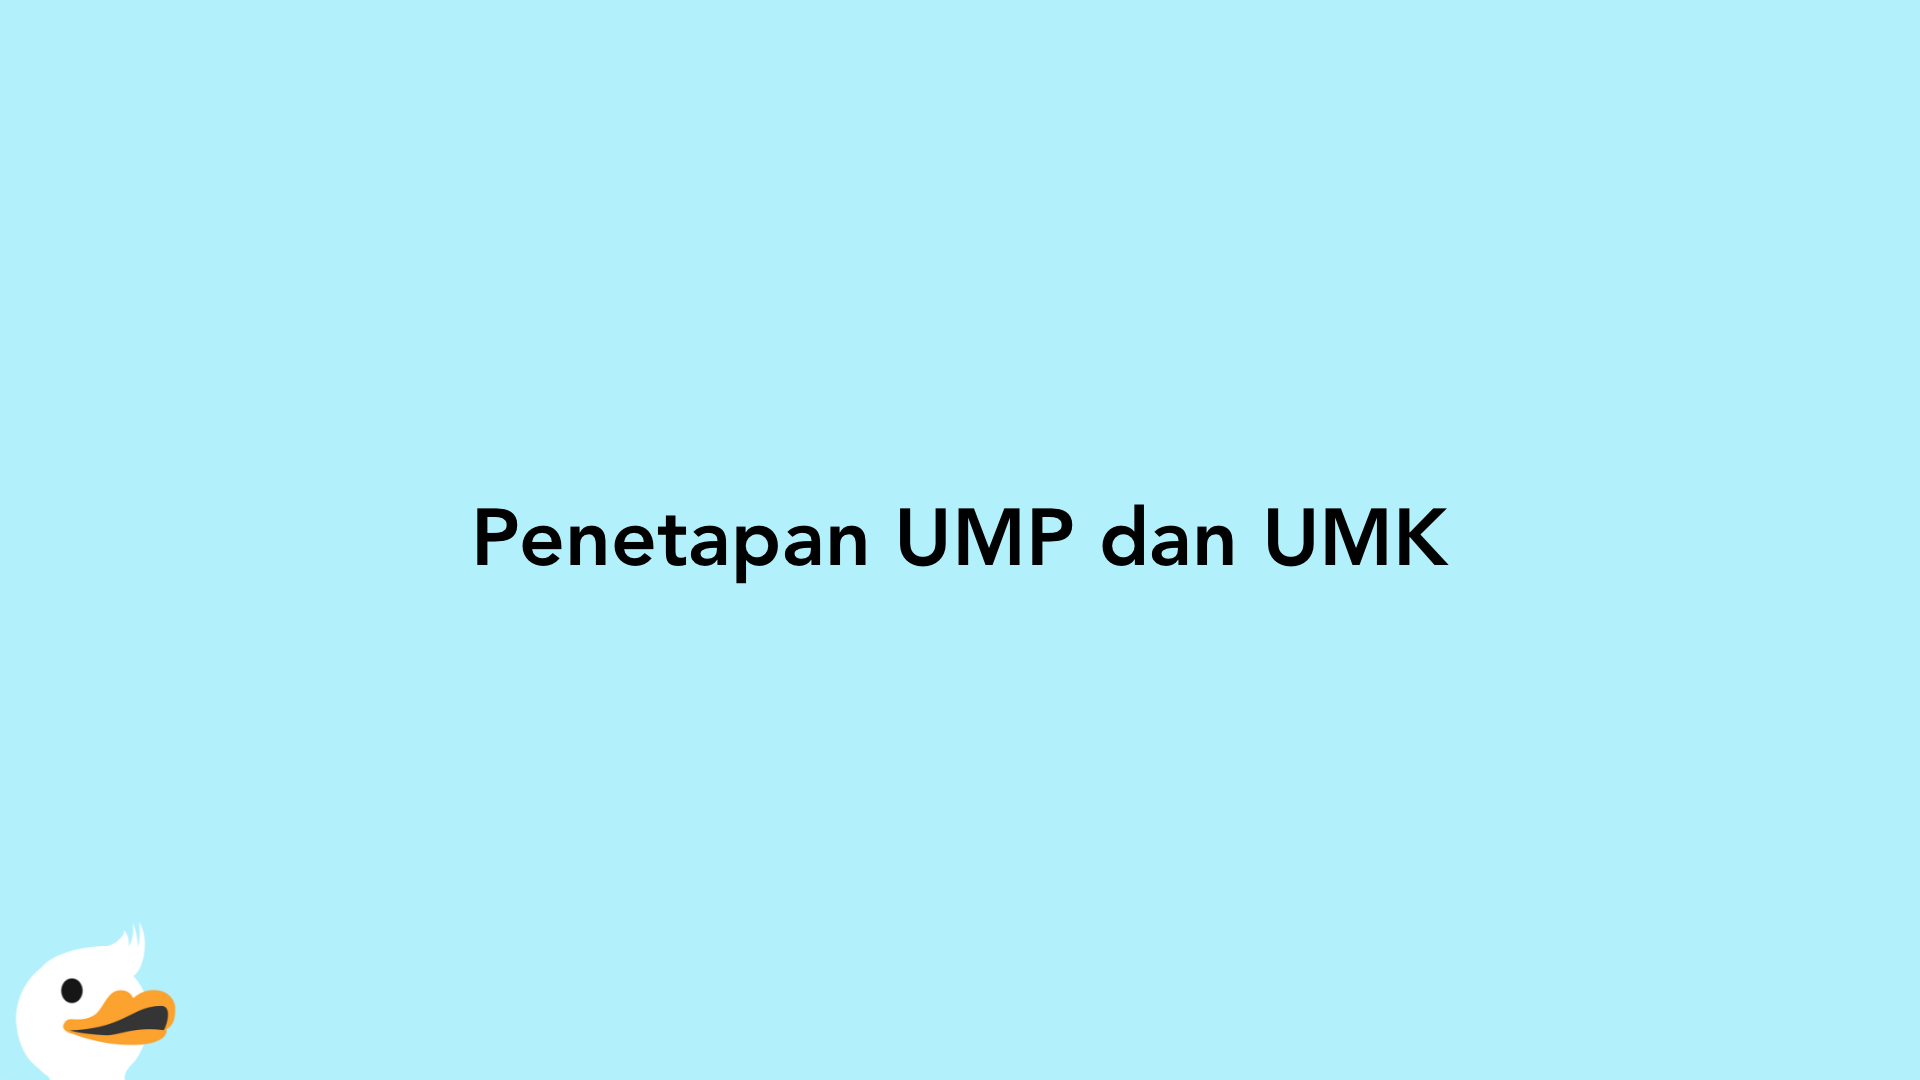 Penetapan UMP dan UMK